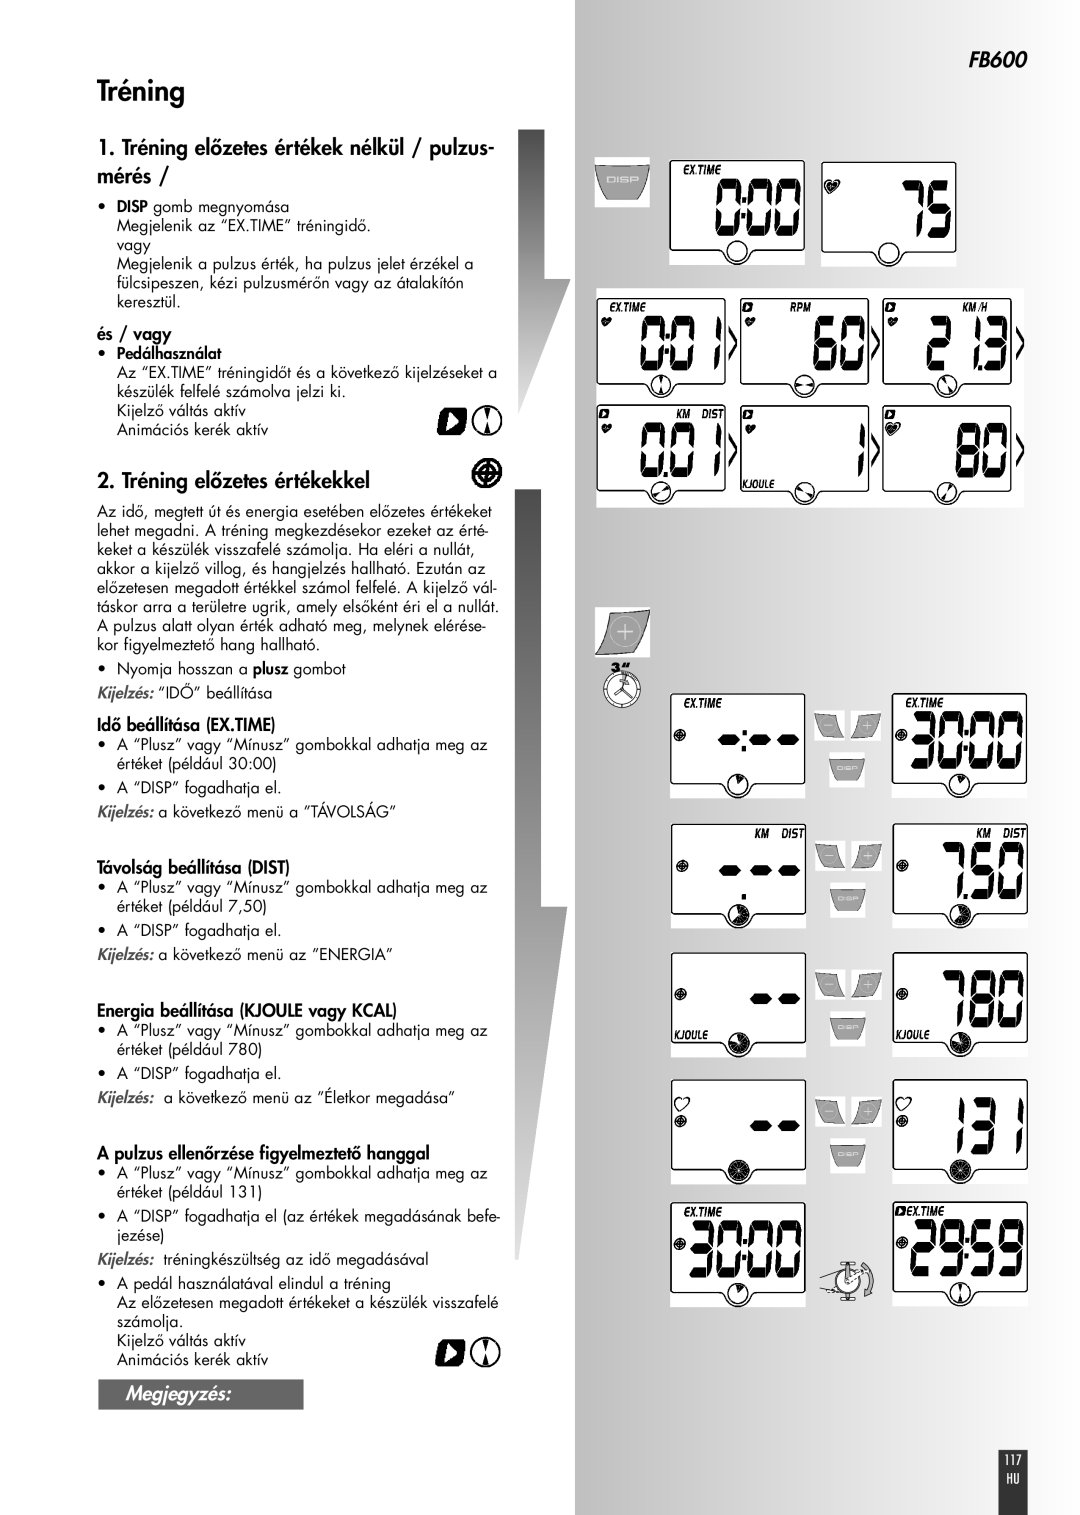 Kettler FB600 manual 1. Tréning előzetes értékek nélkül / pulzus- mérés, 2. Tréning előzetes értékekkel, Megjegyzés 